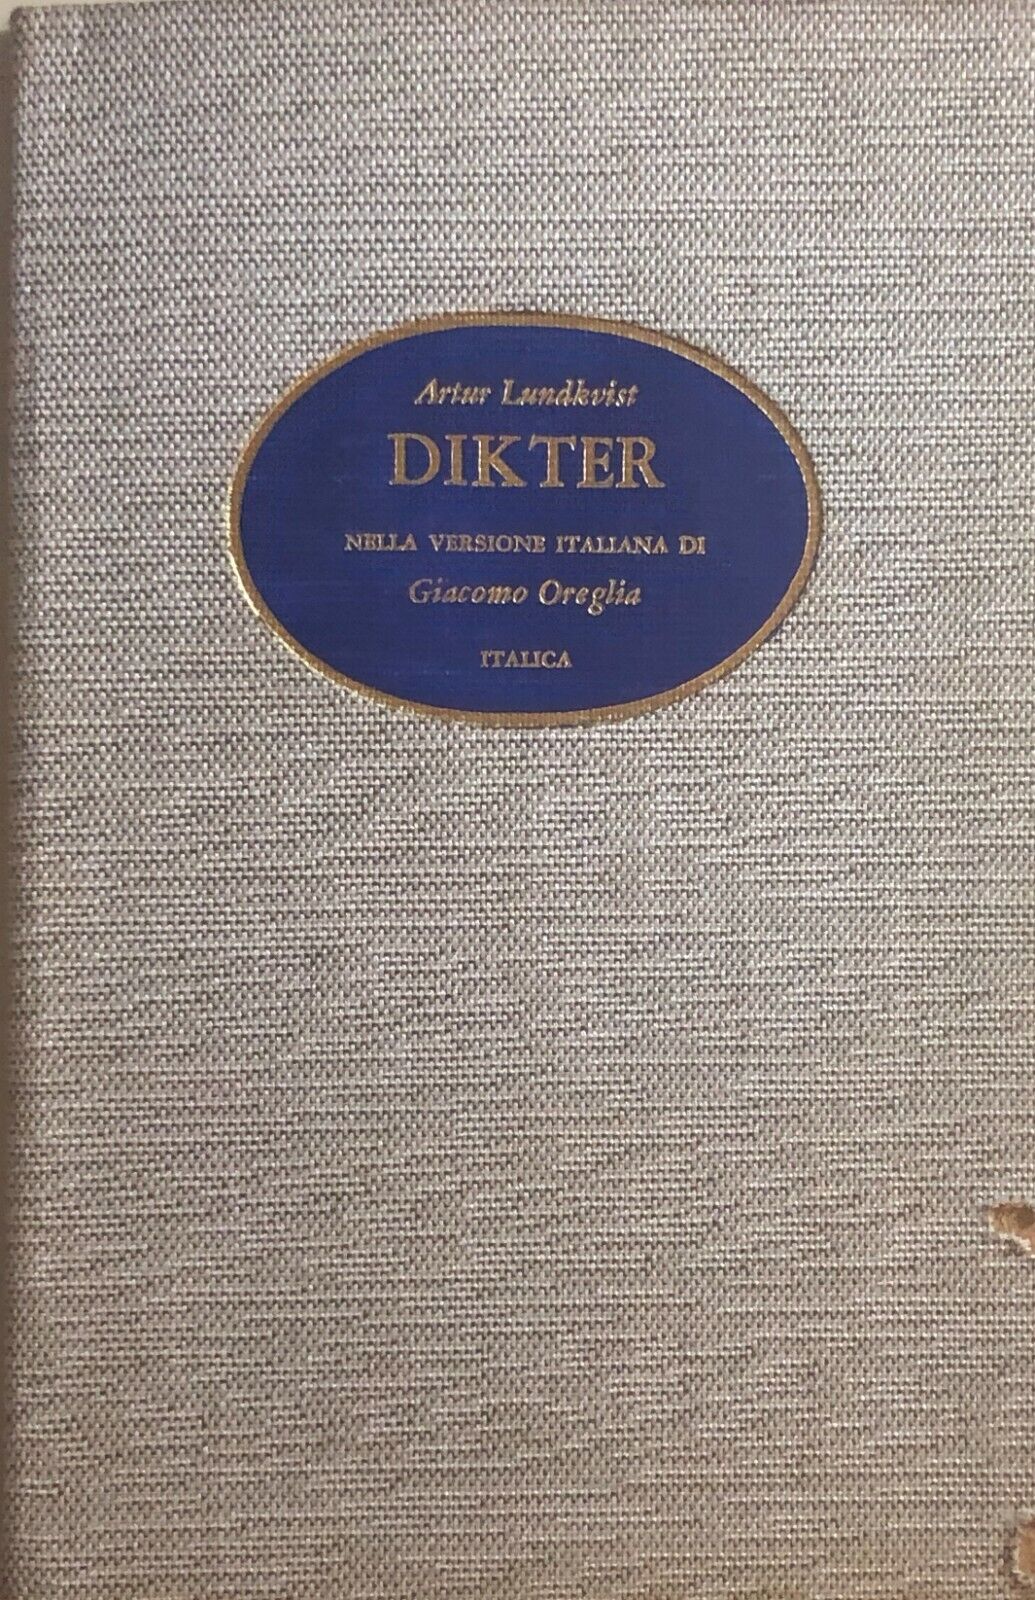 Dikter di Artur Lundkvist, 1960, Casa Editrice Italica